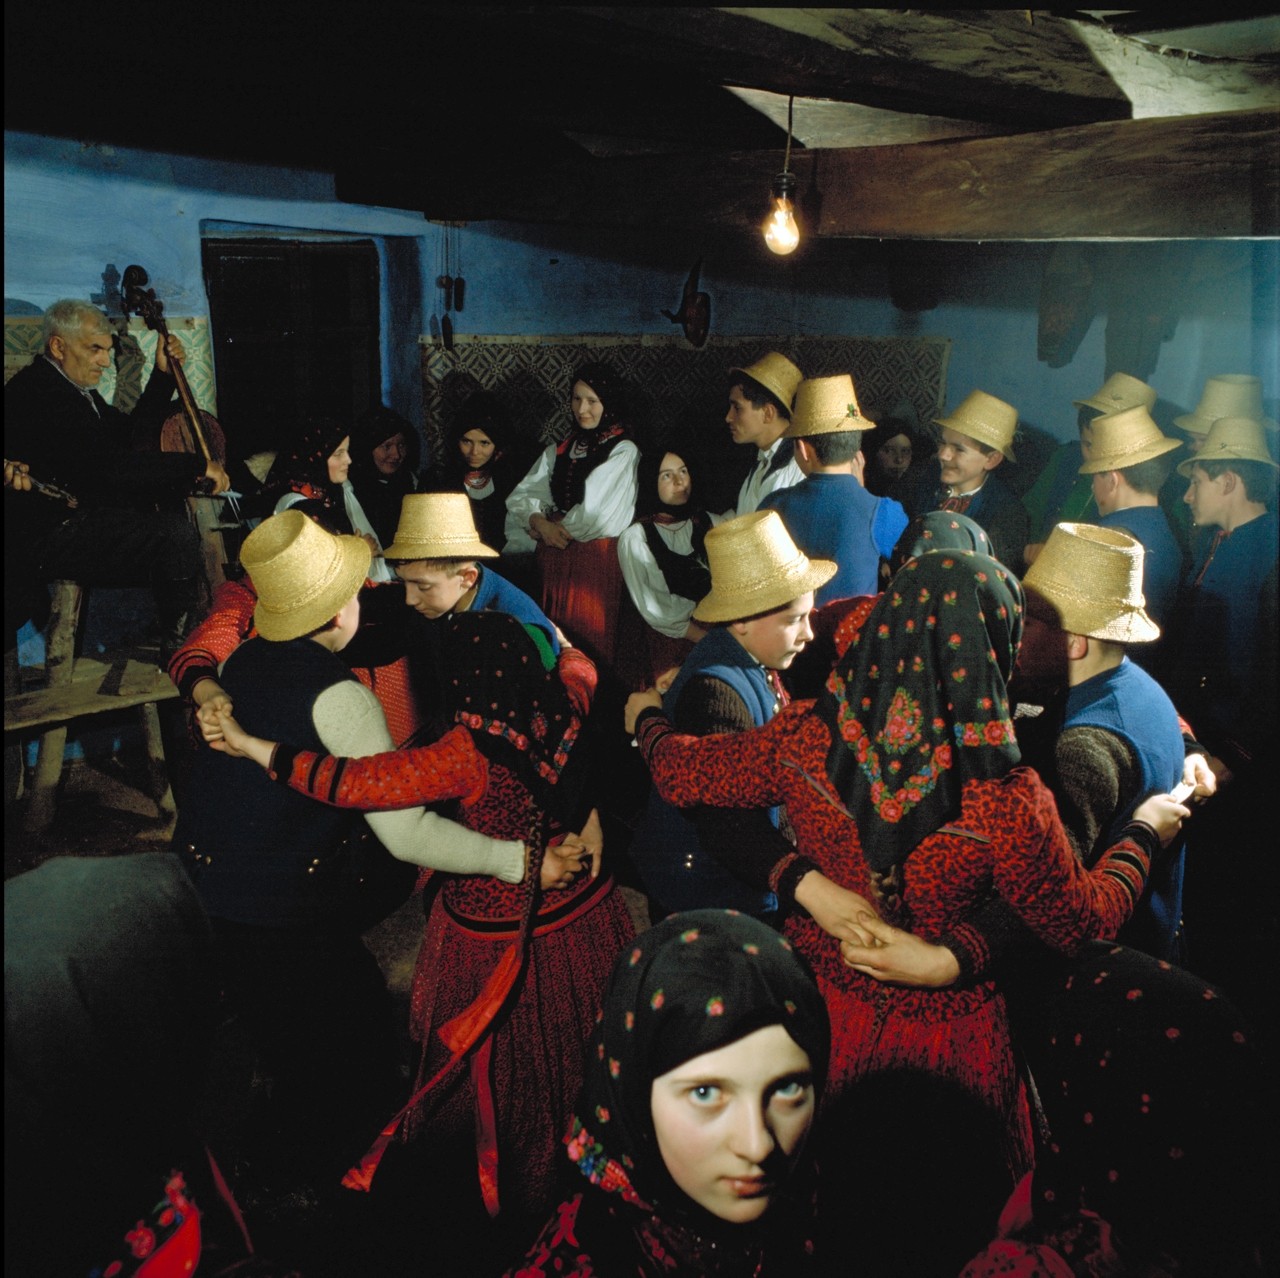 Девушка на вечере народных танцев. Венгерская деревня, 1971. Фотограф Петер Корниш